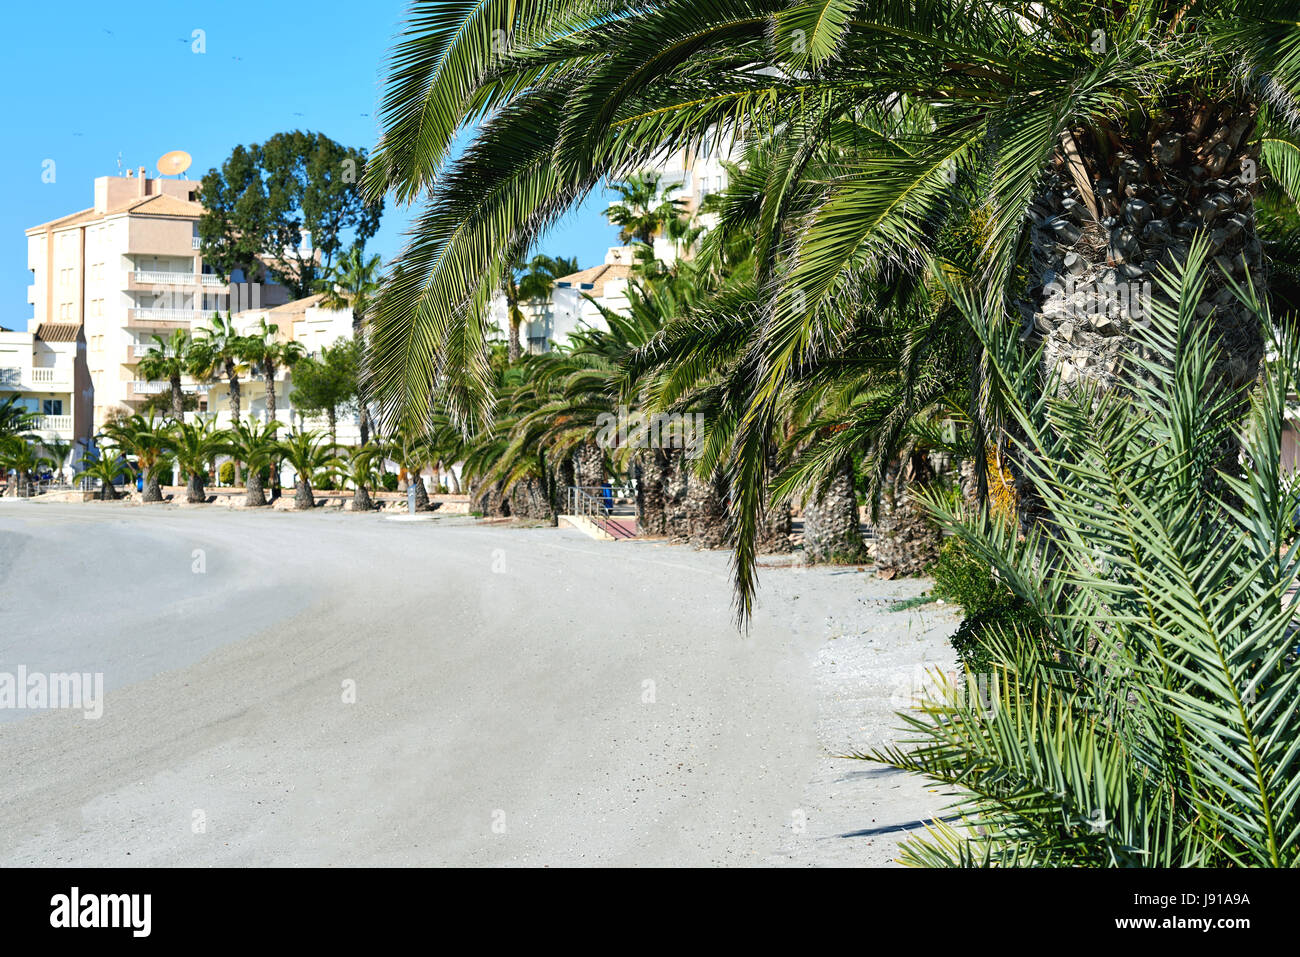 Empty beach of La Manga (La Manga del Mar Menor), is a seaside spit in the Region of Murcia, Spain. Stock Photo